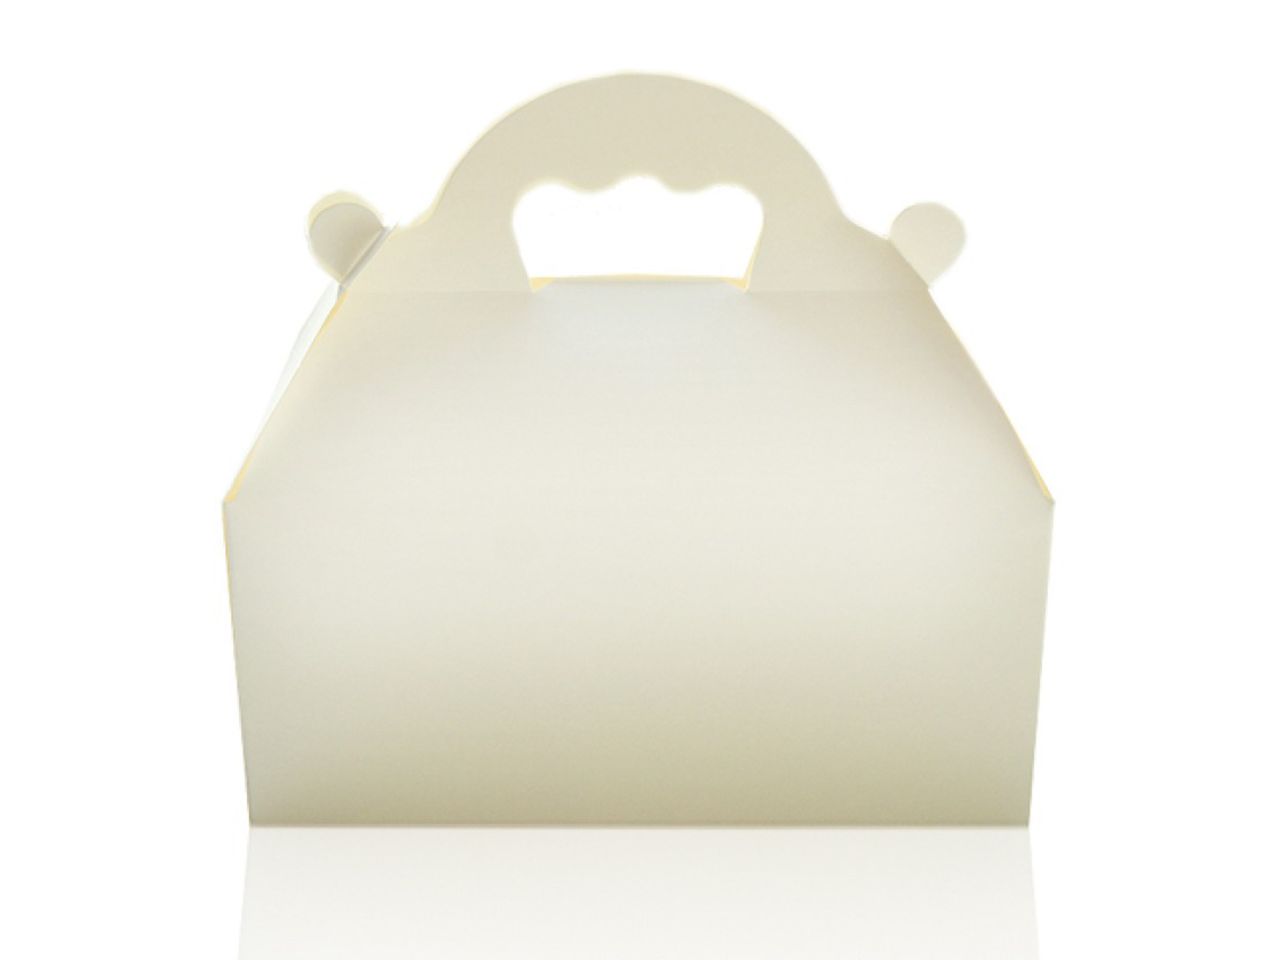 Kuchenbox mit Tragegriff, Weiß, Pappe, 16 x 18 cm